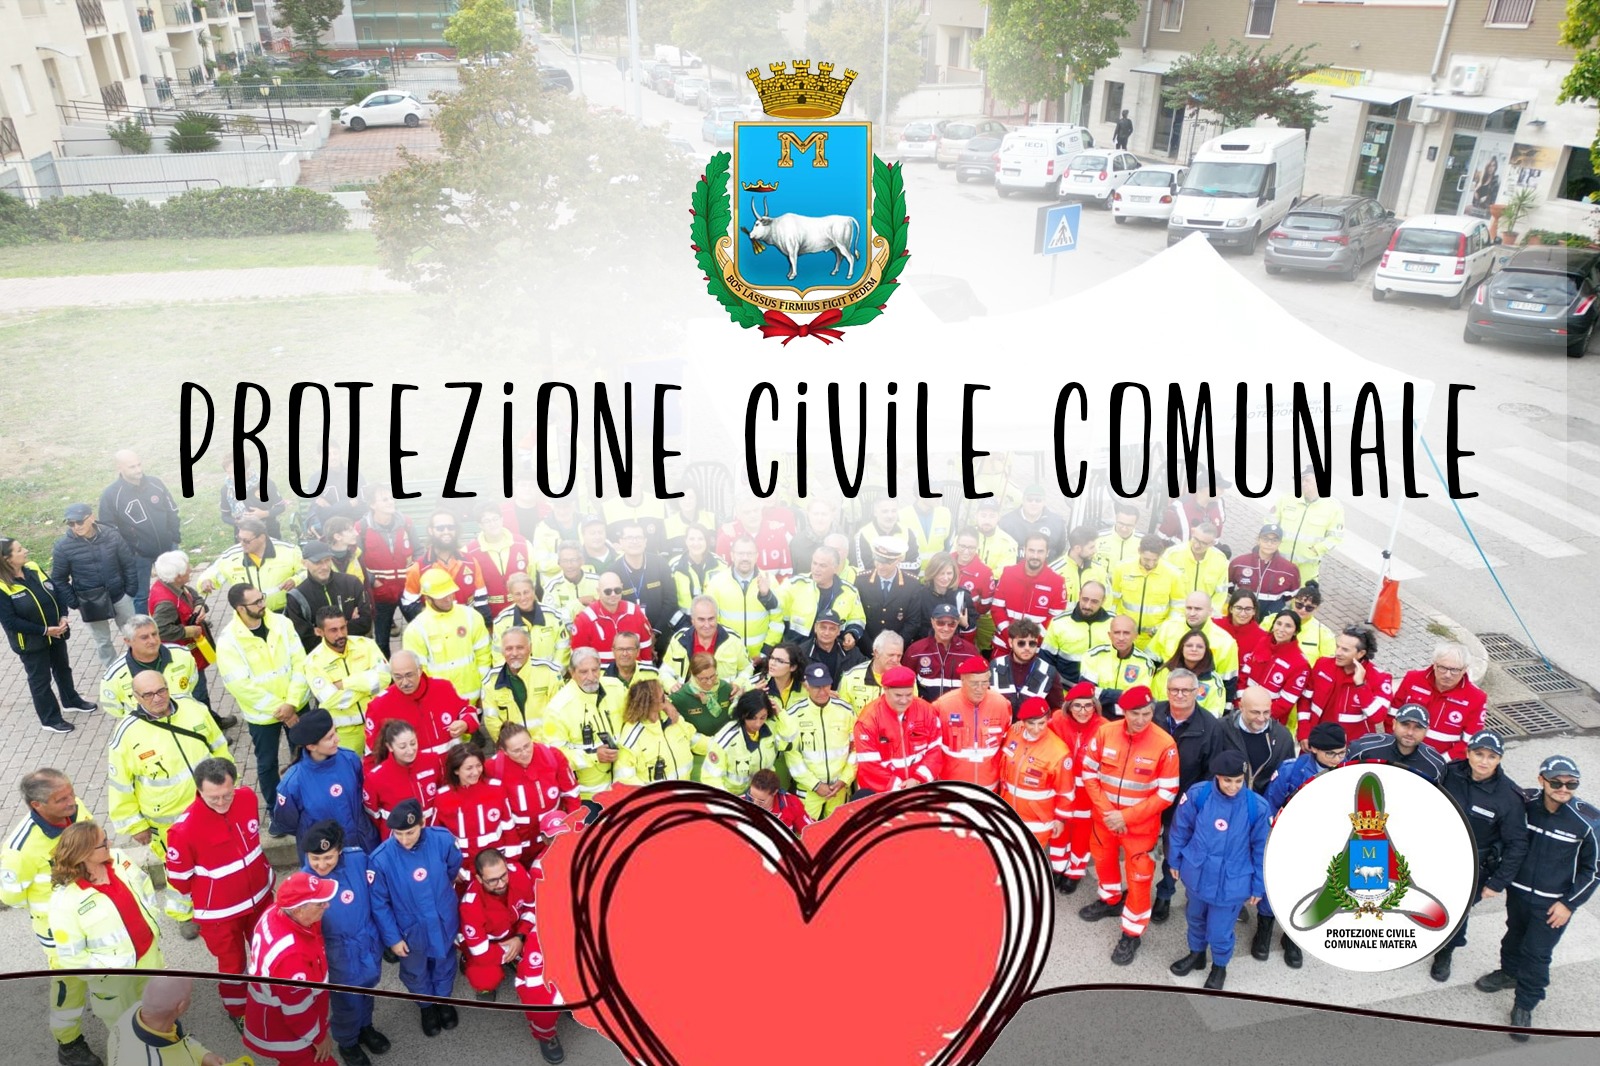 Protezione civile comunale: il 6 gennaio una giornata divulgativa a Matera